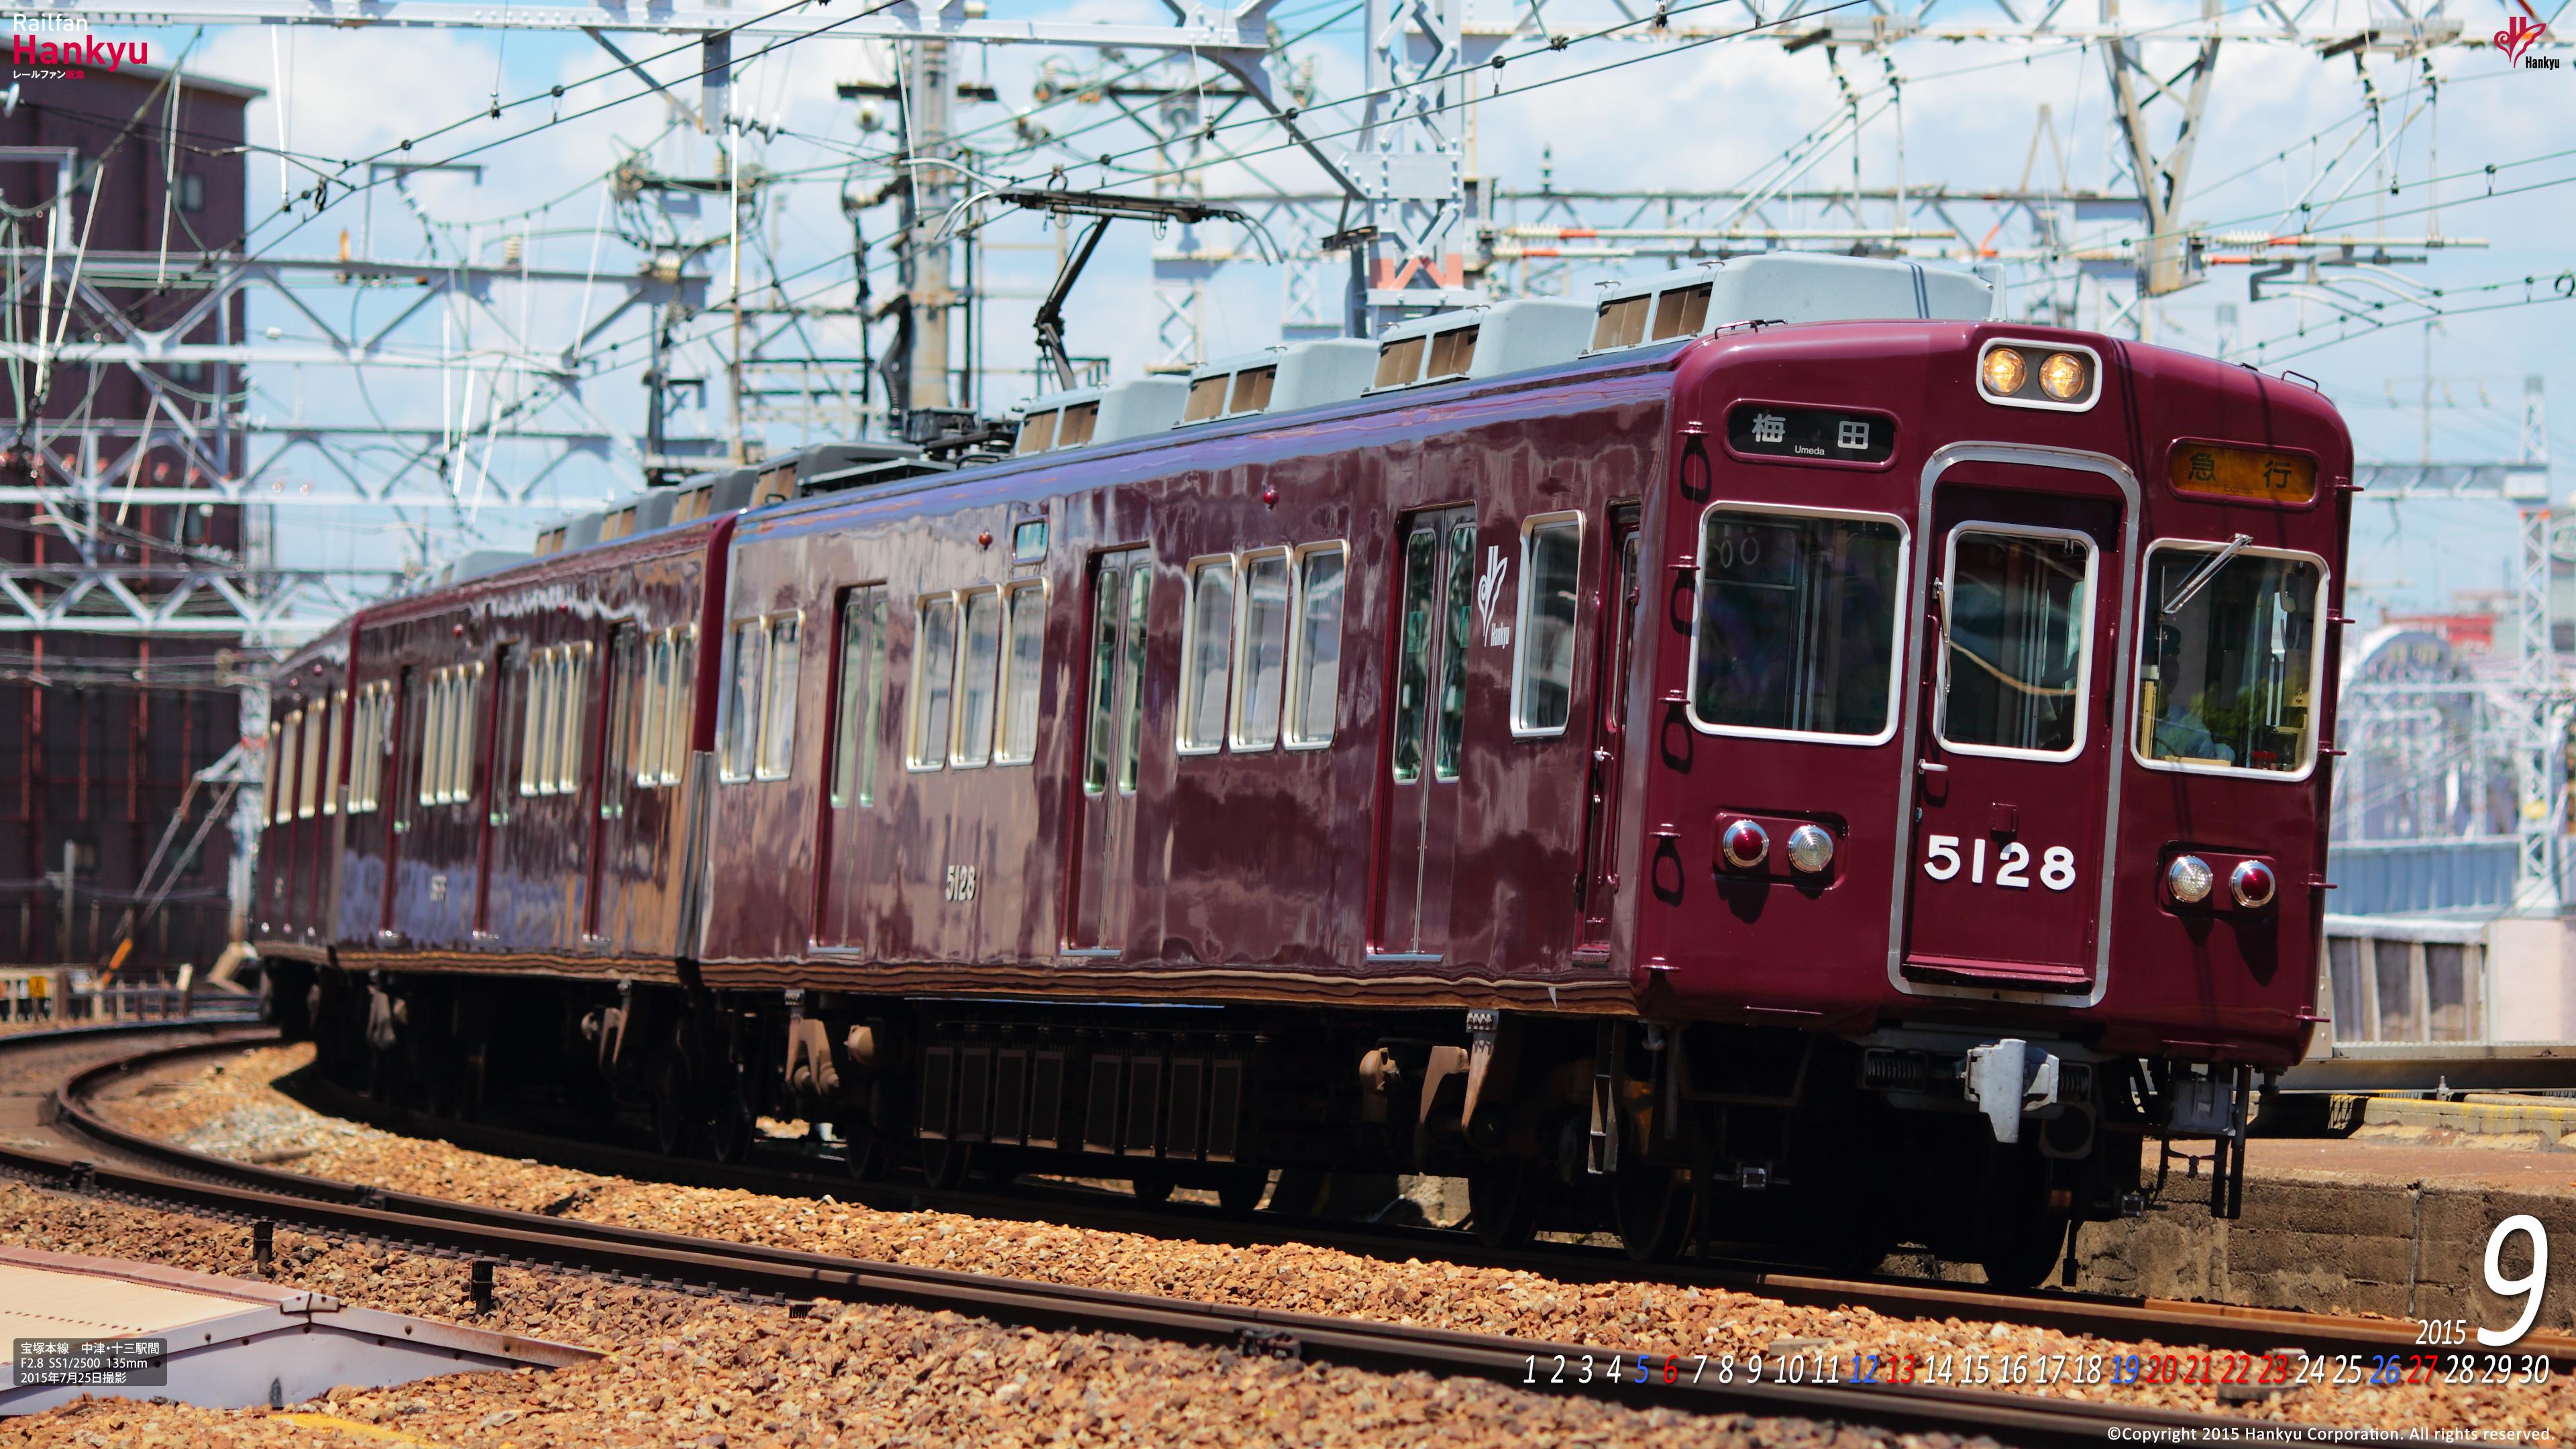 15年09月 壁紙カレンダー レールファン阪急 阪急電車 公式鉄道ファンサイト 阪急電鉄